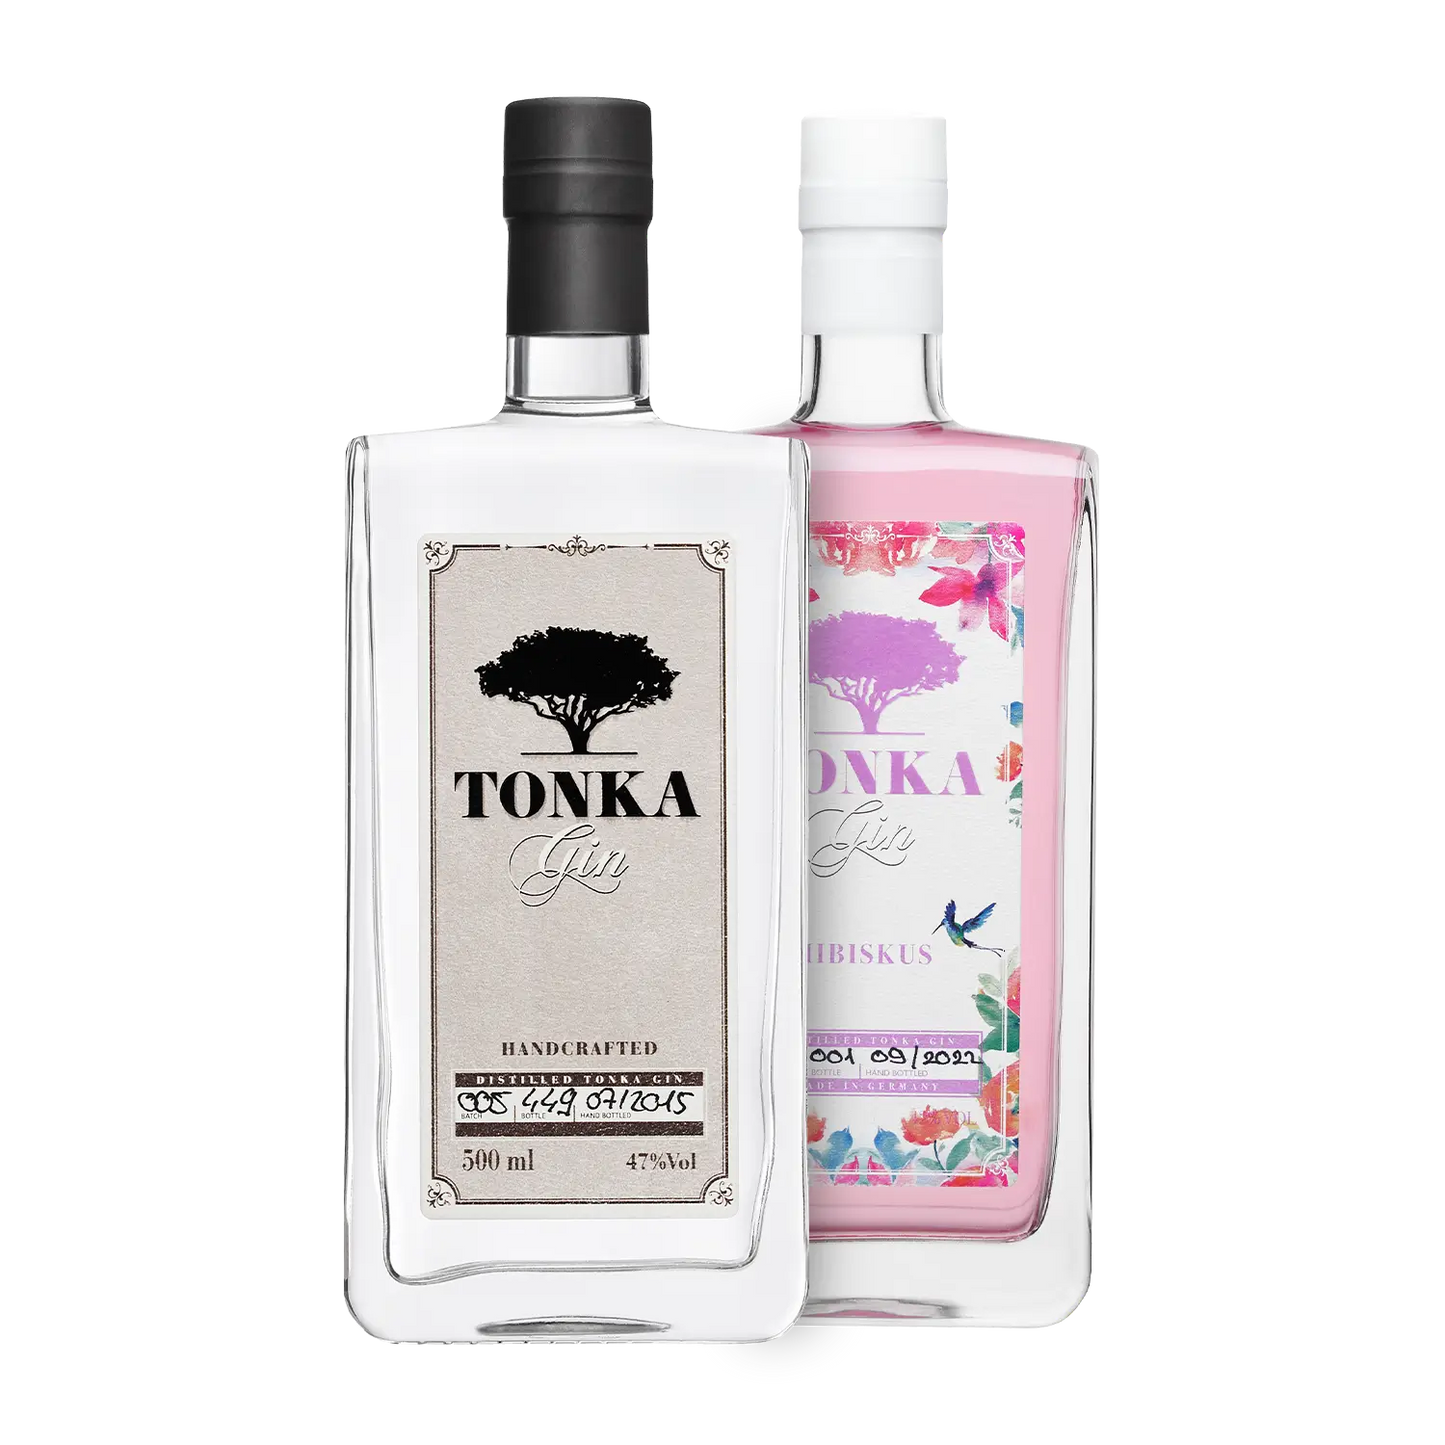 Tonka Gin Spirituosenliebhaber | perfekte Geschenk – Gin-Liebhaber Das Kennenlern-Bundle